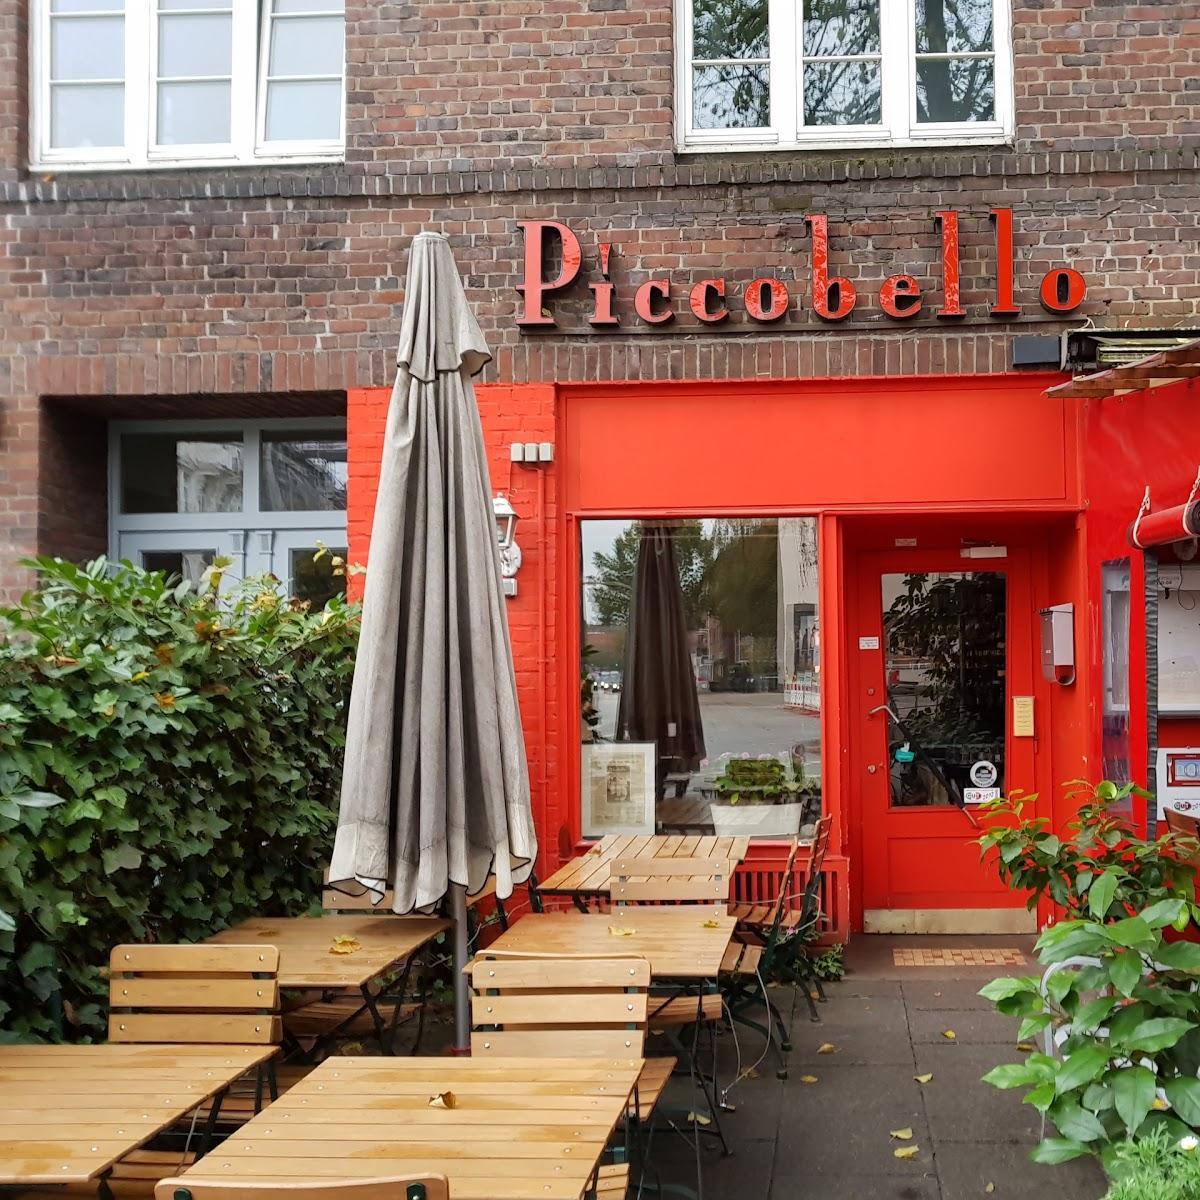 Restaurant "Ristorante Piccobello" in Hamburg